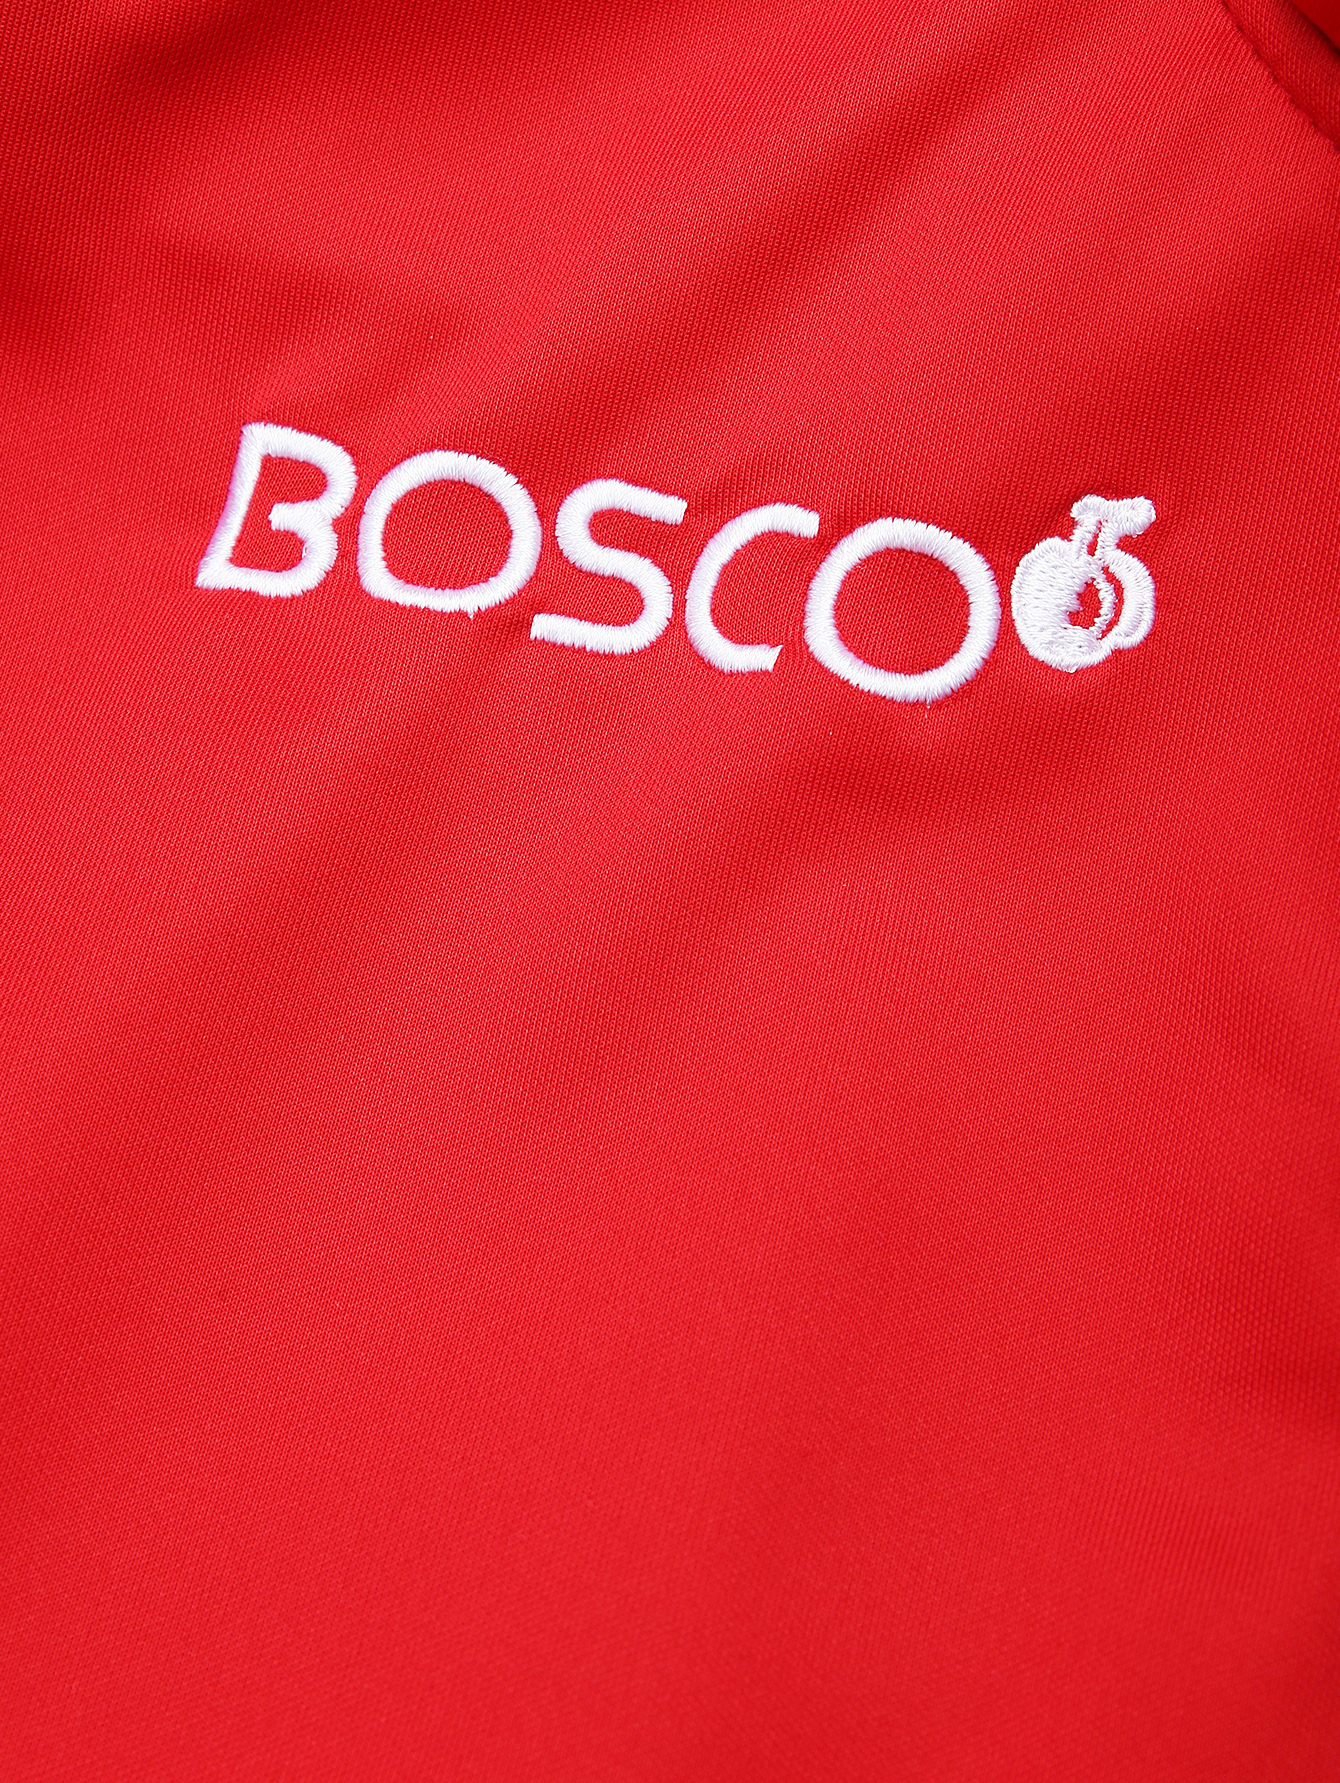 Боско сайт интернет магазин. Боско. Боско спортивная одежда. Логотип Боско спорт. Bosco спортивный костюм.